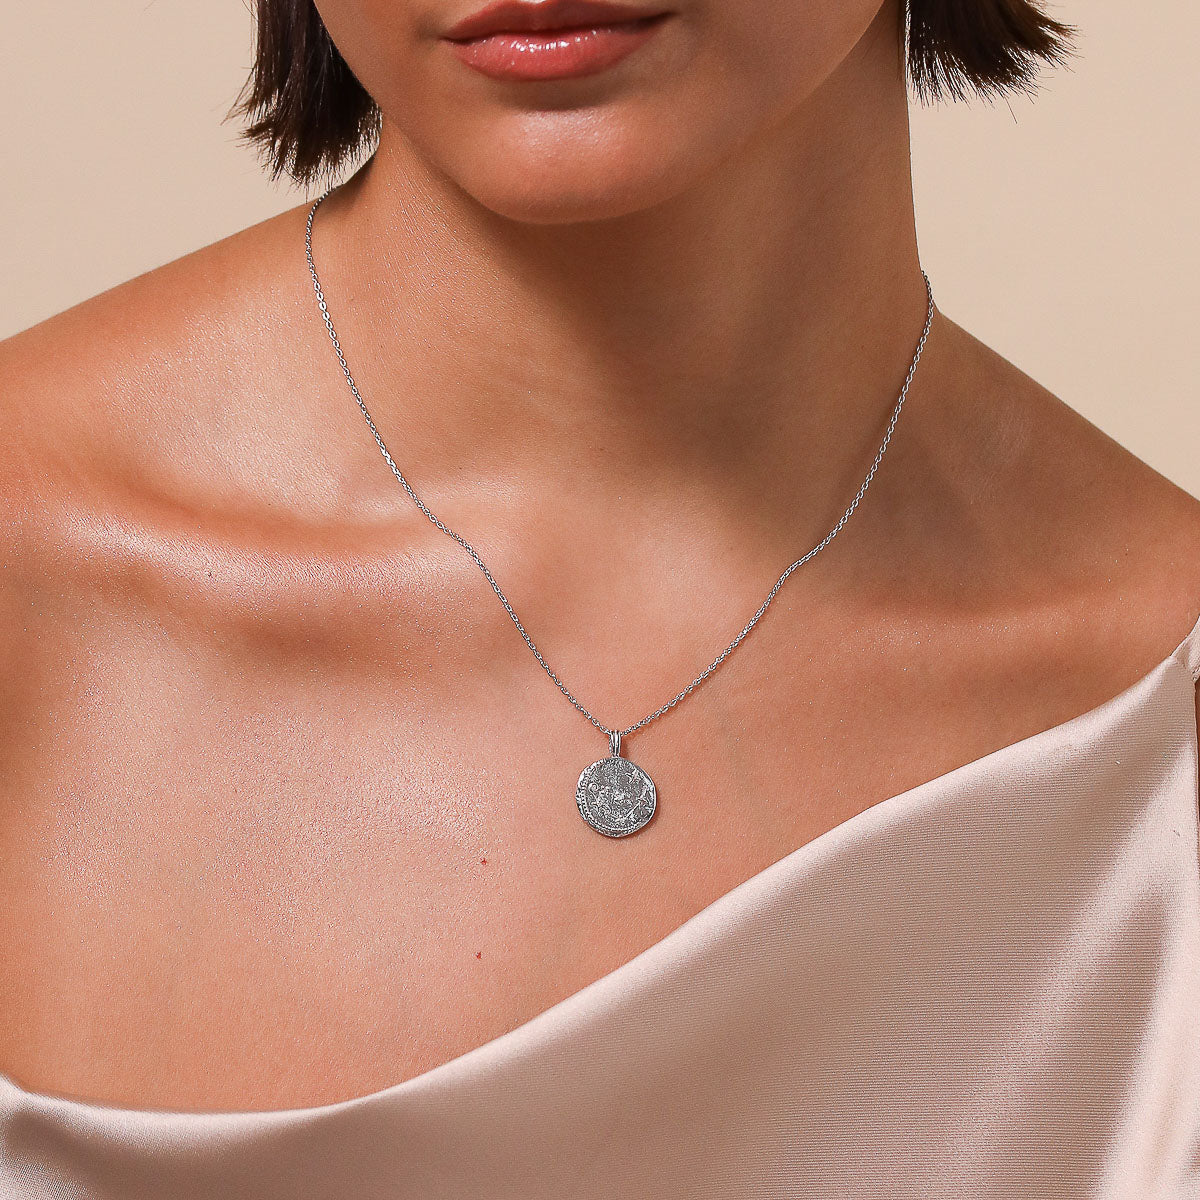 Capricorn Zodiac Pendant Necklace in Silver worn